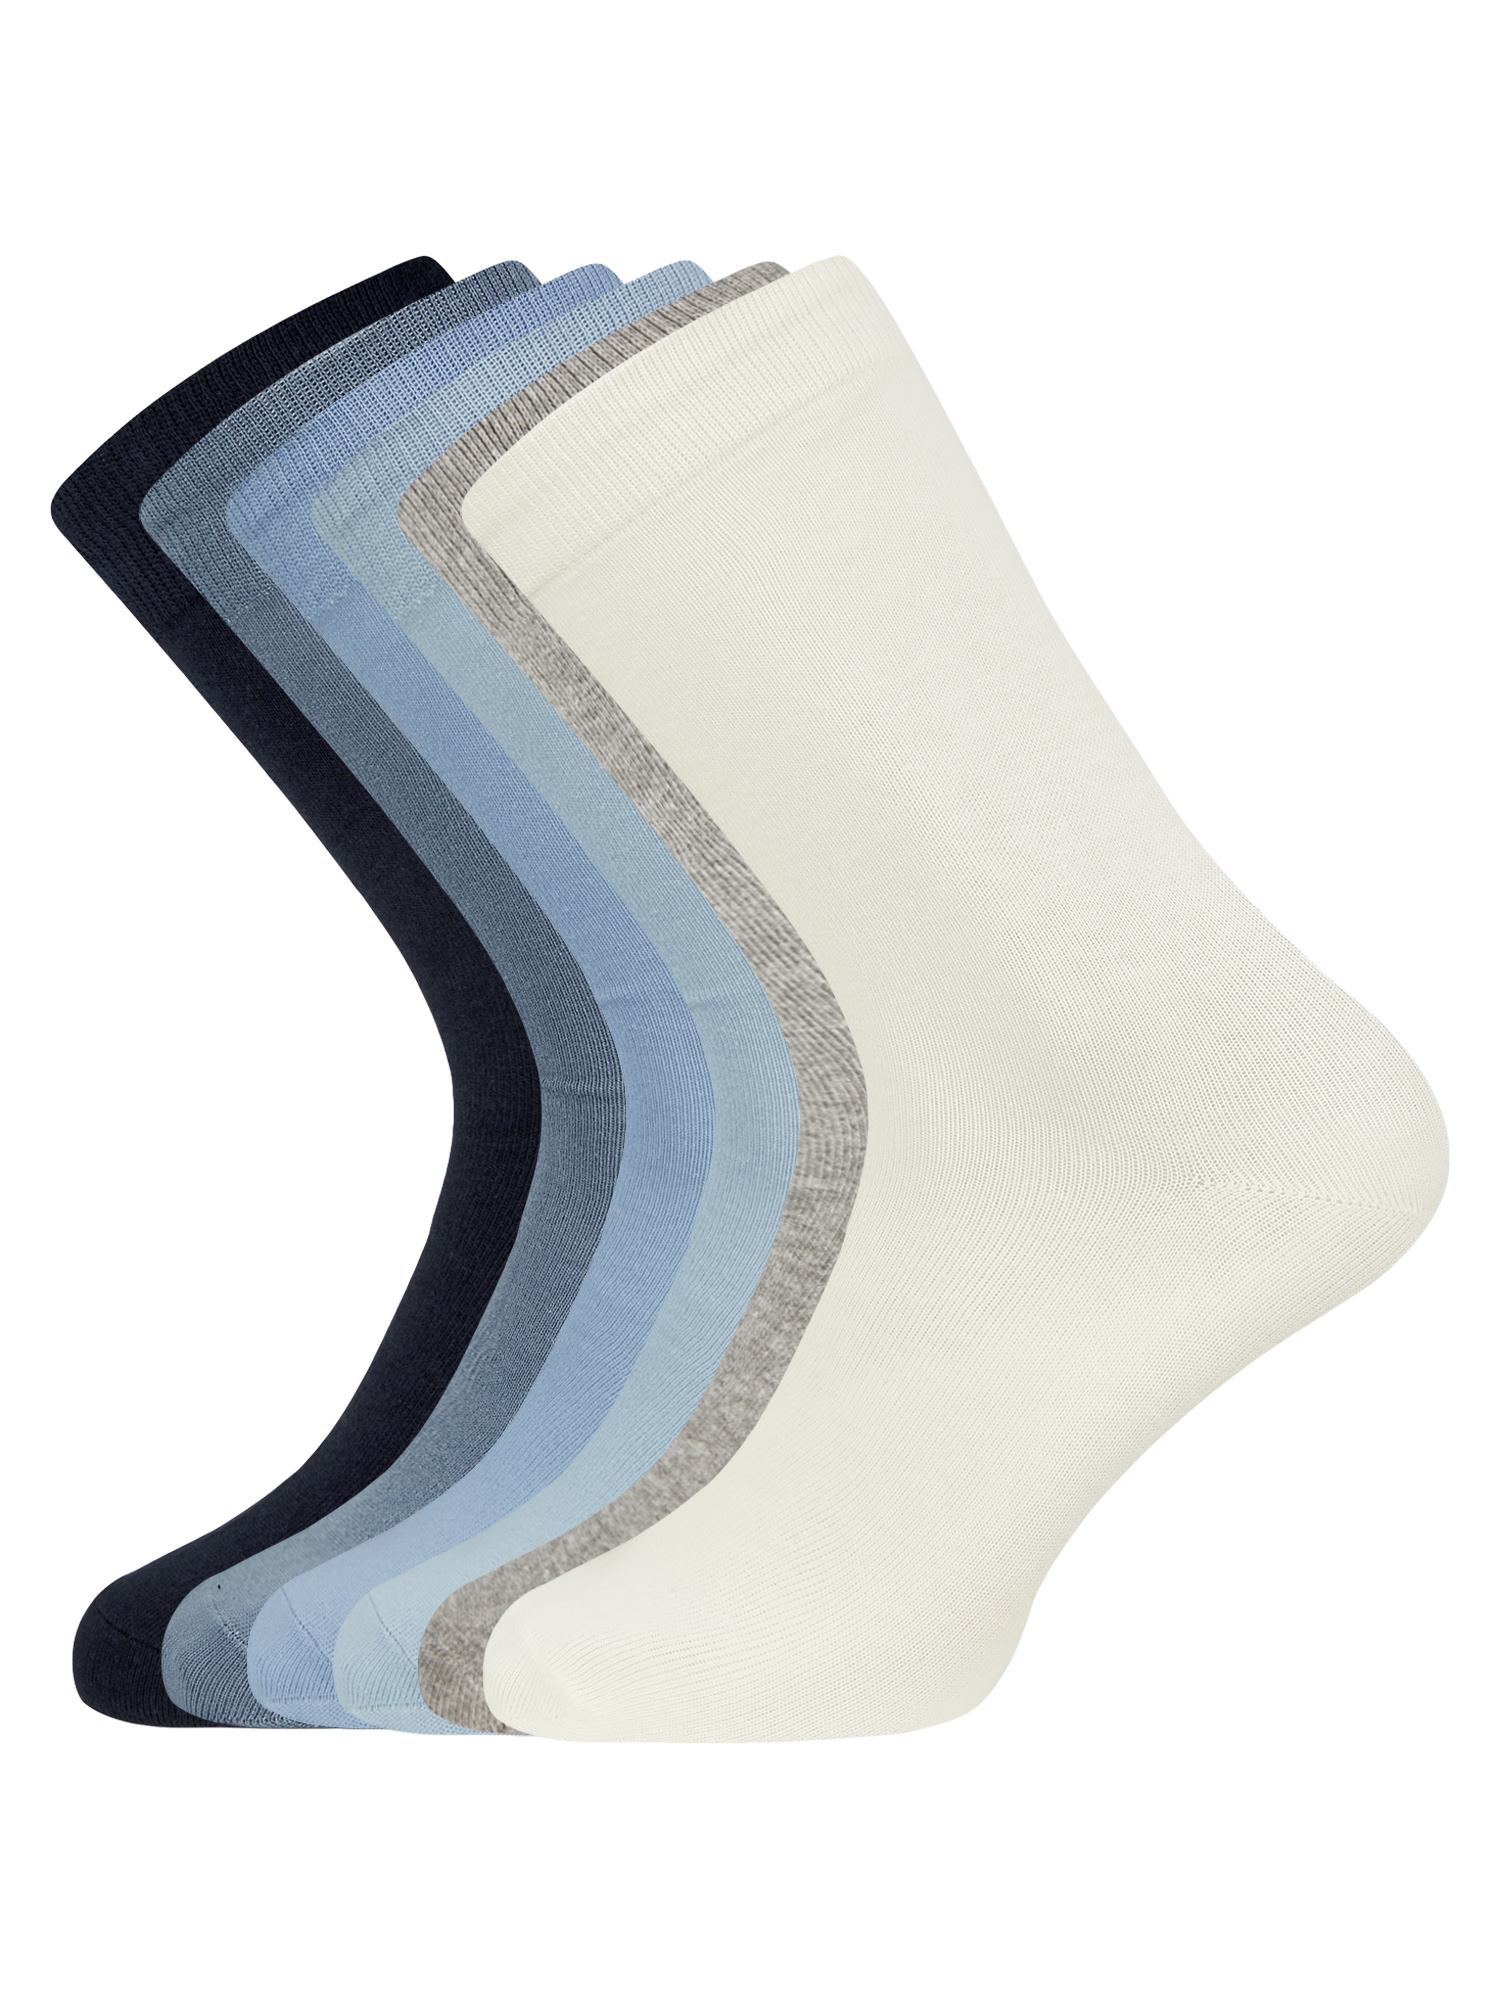 Комплект носков мужских oodji 7B263001T6 разноцветных 40-43